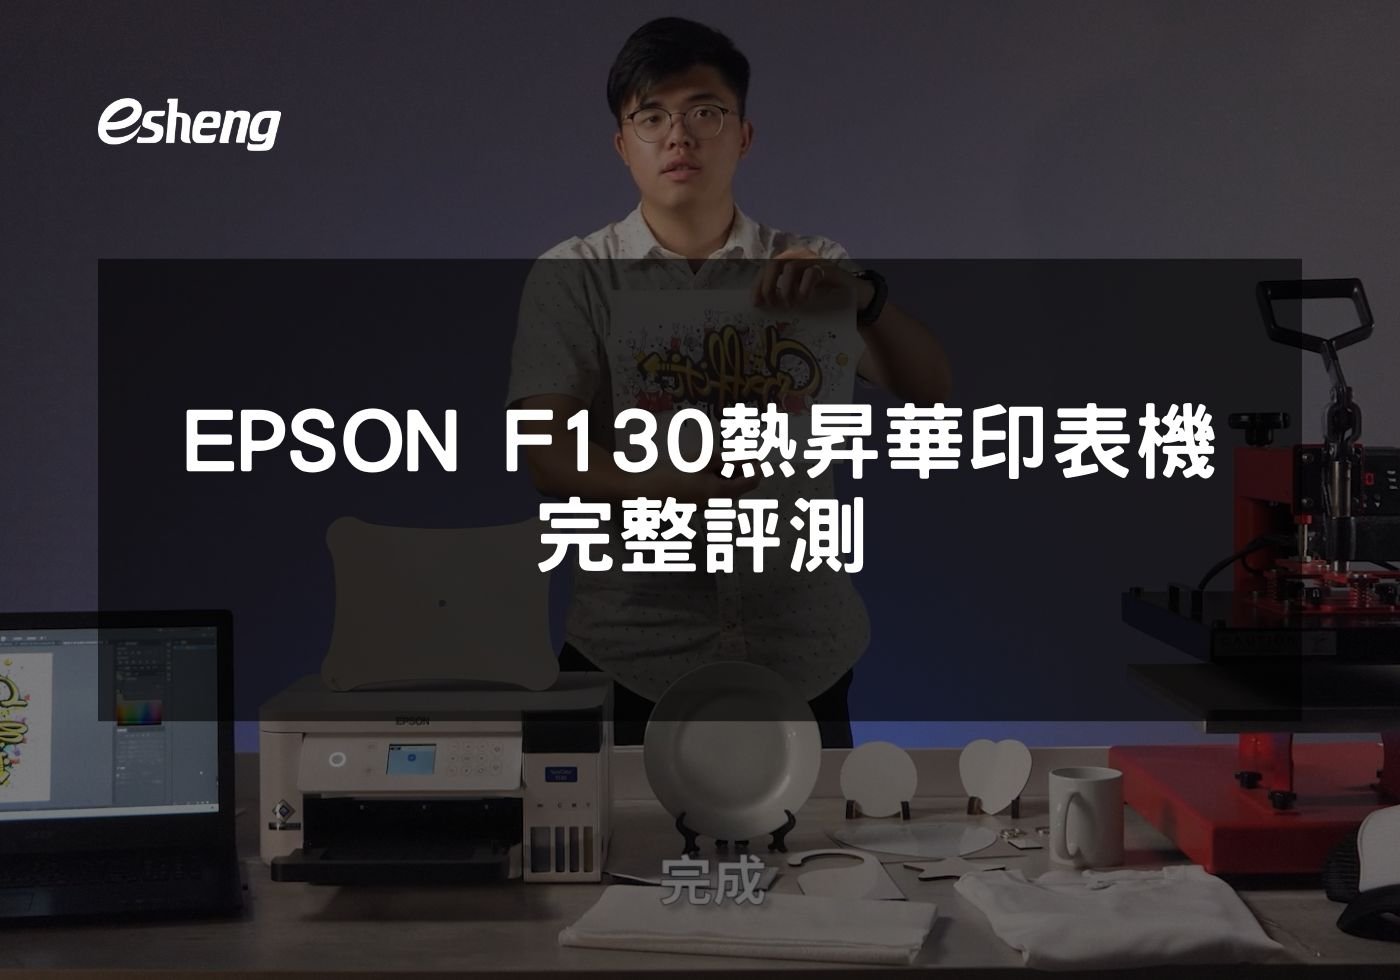 閱讀更多文章 EPSON F130熱昇華印表機完整評測